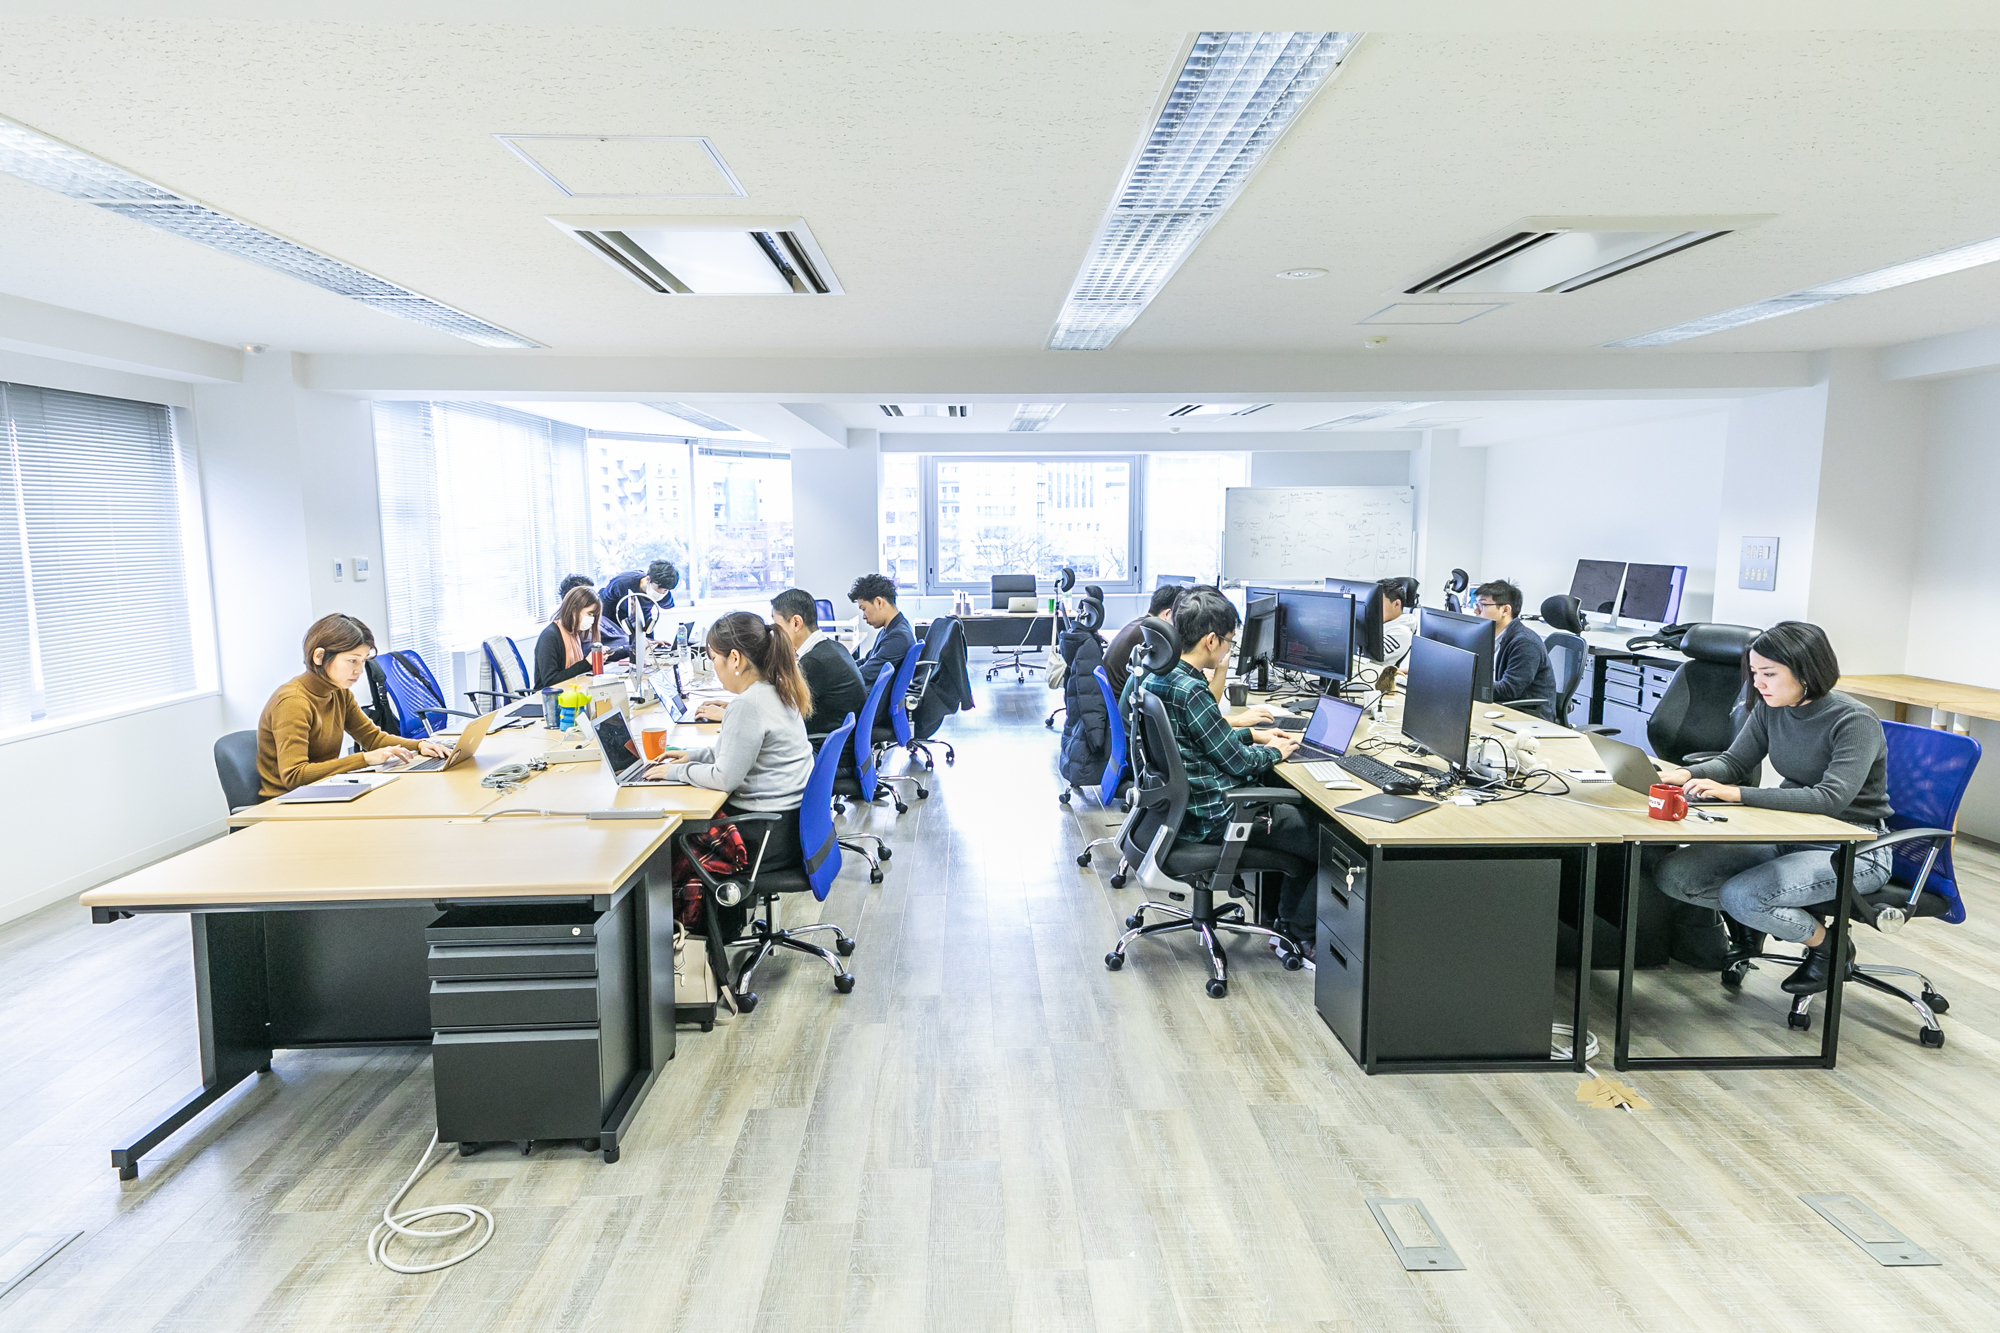 日本オフィスの風景です。商品の改善点や営業方法などフラットに意見交換ができる環境になっています。